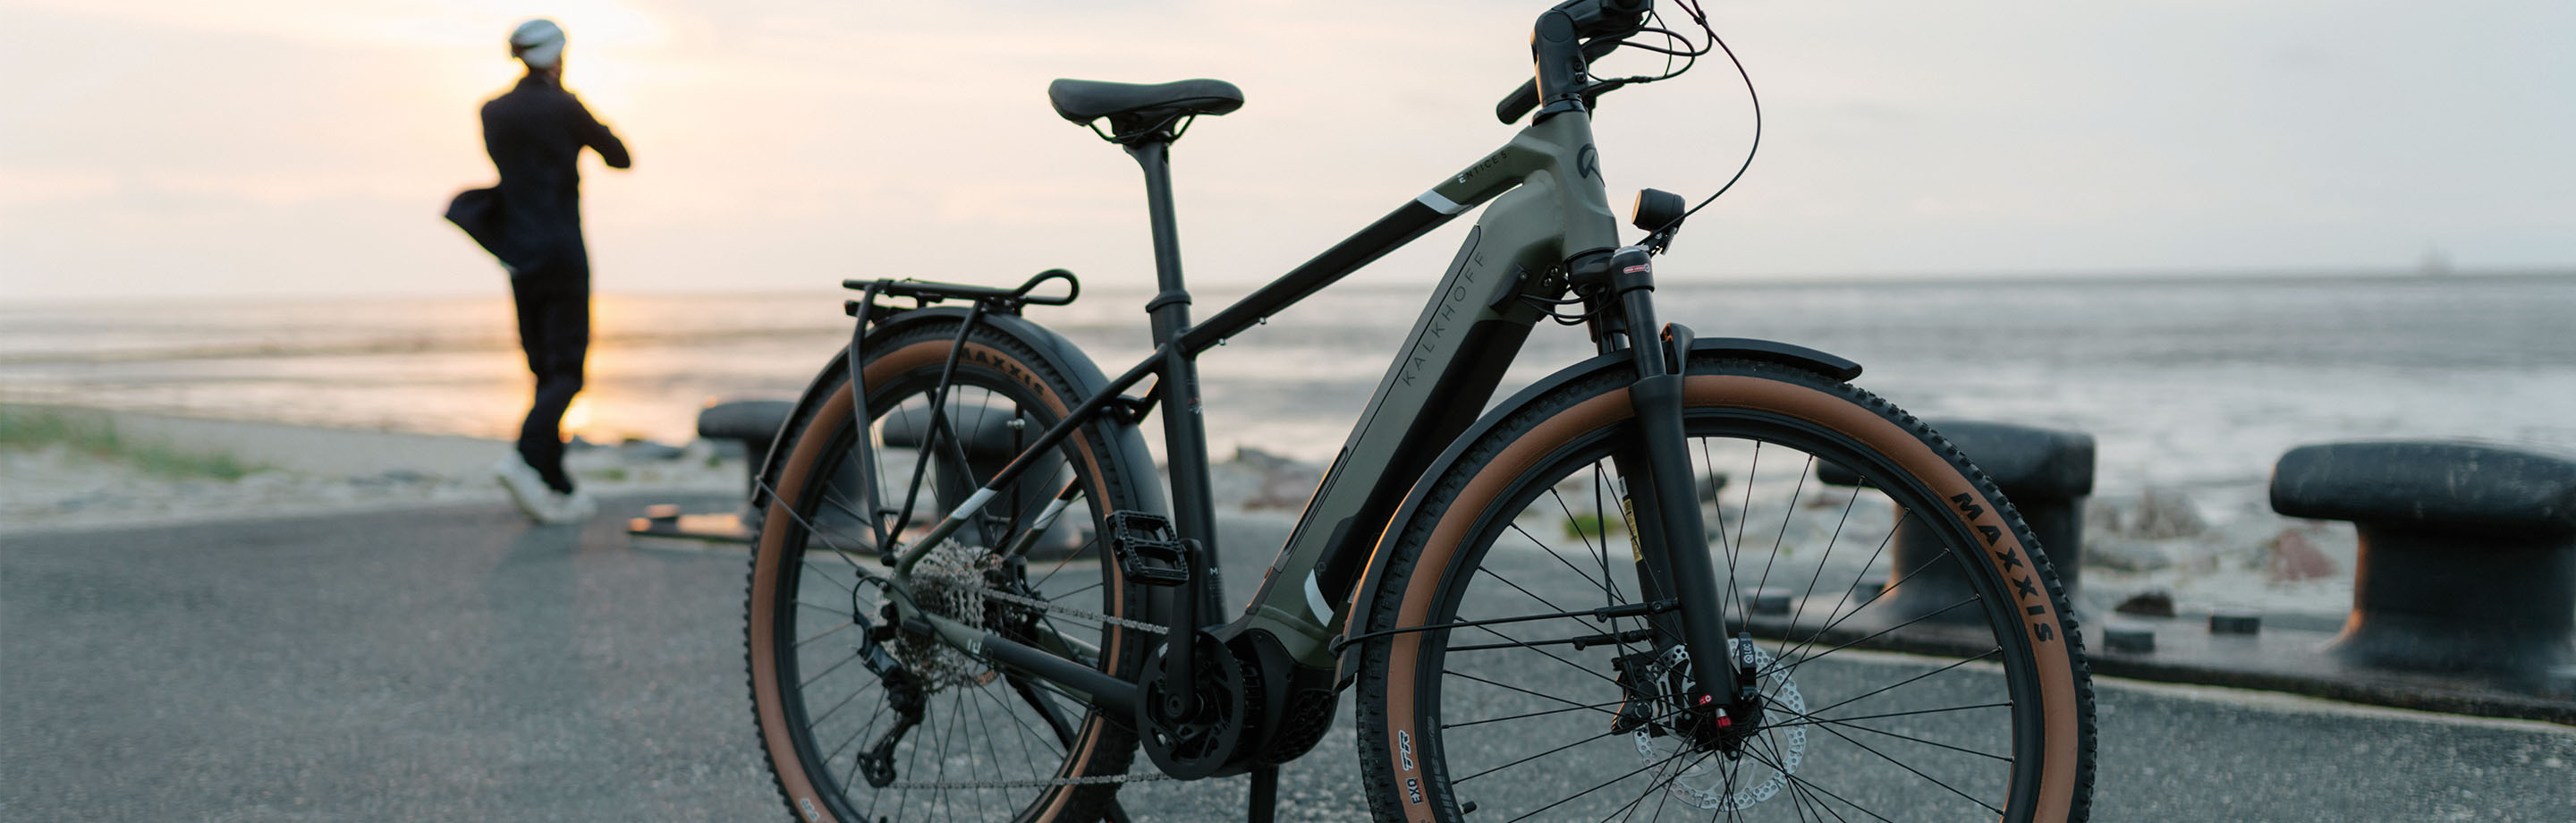 Kalkhoff e-bikes - fietsen voor dagelijks gebruik